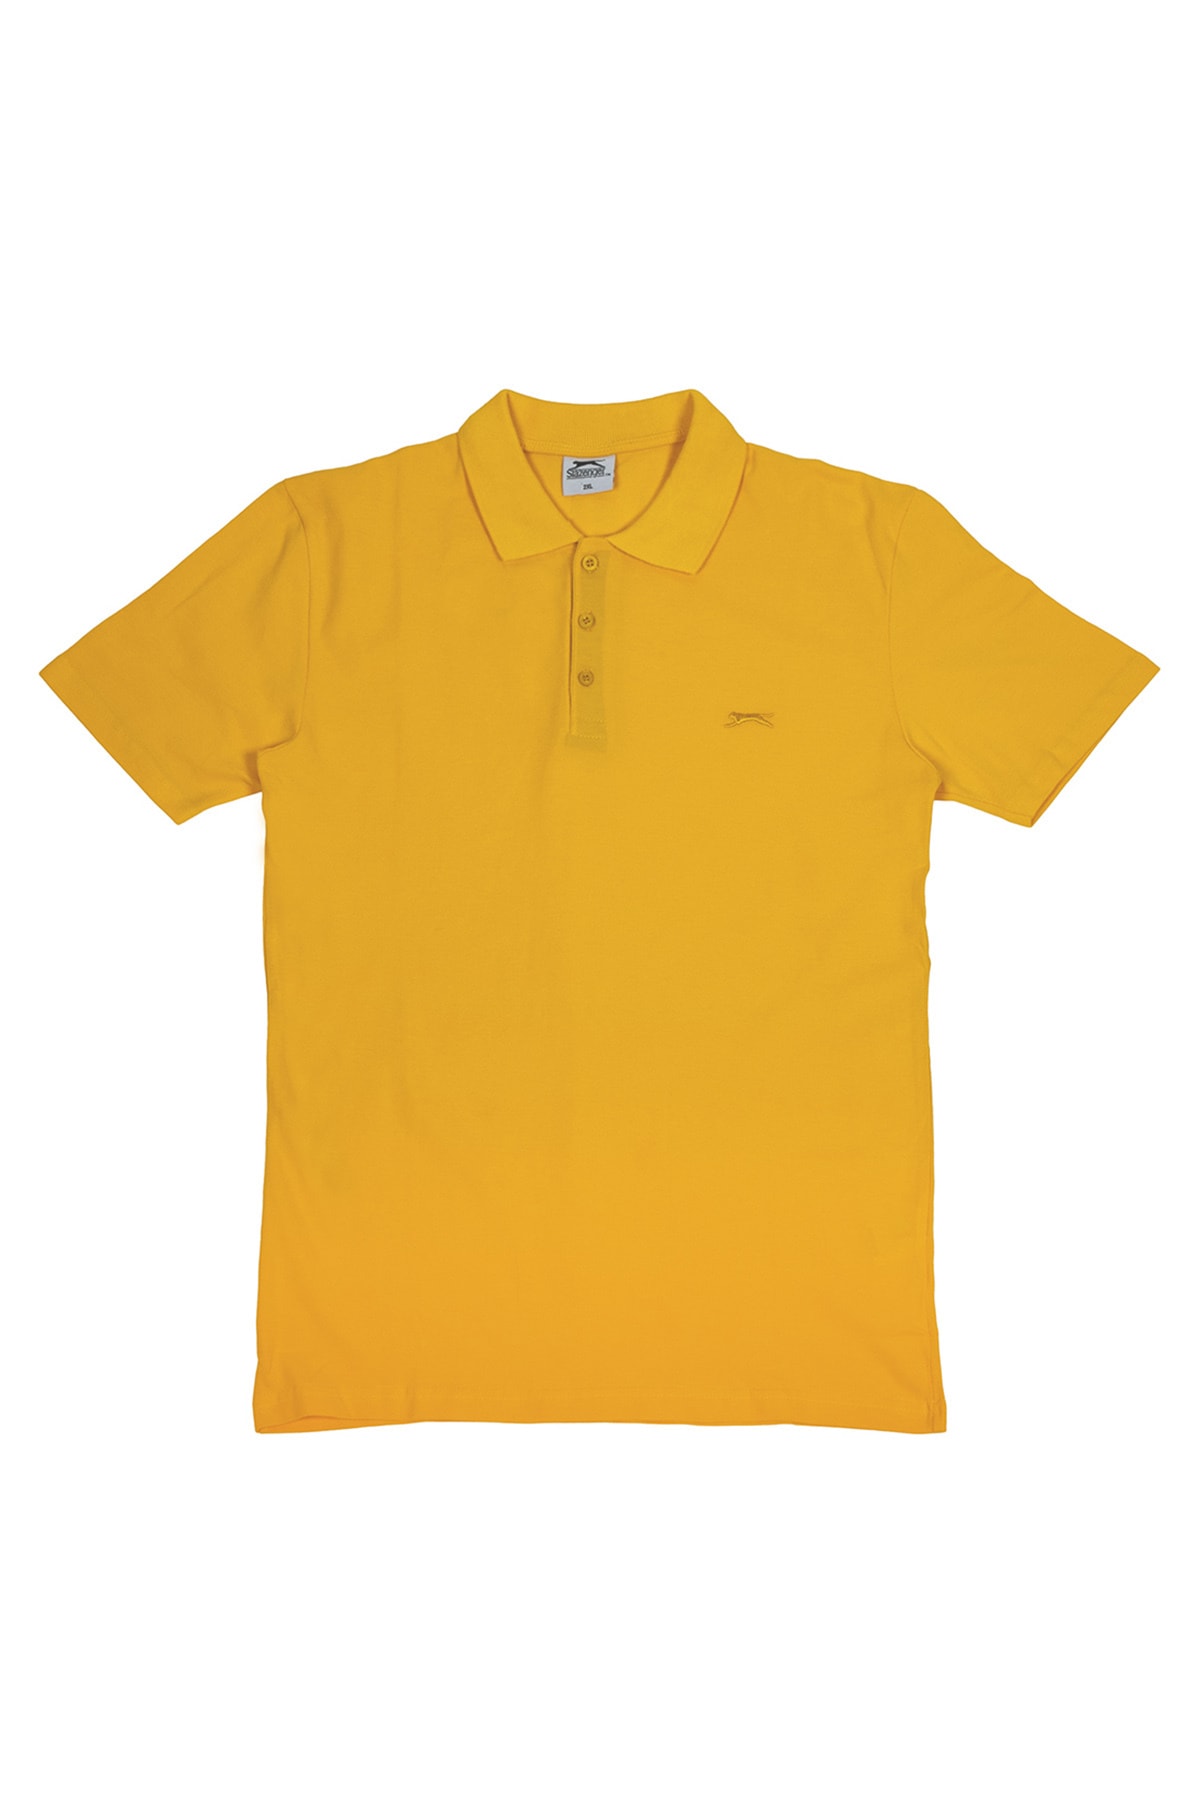 Slazenger T-Shirt Gelb Regular Fit